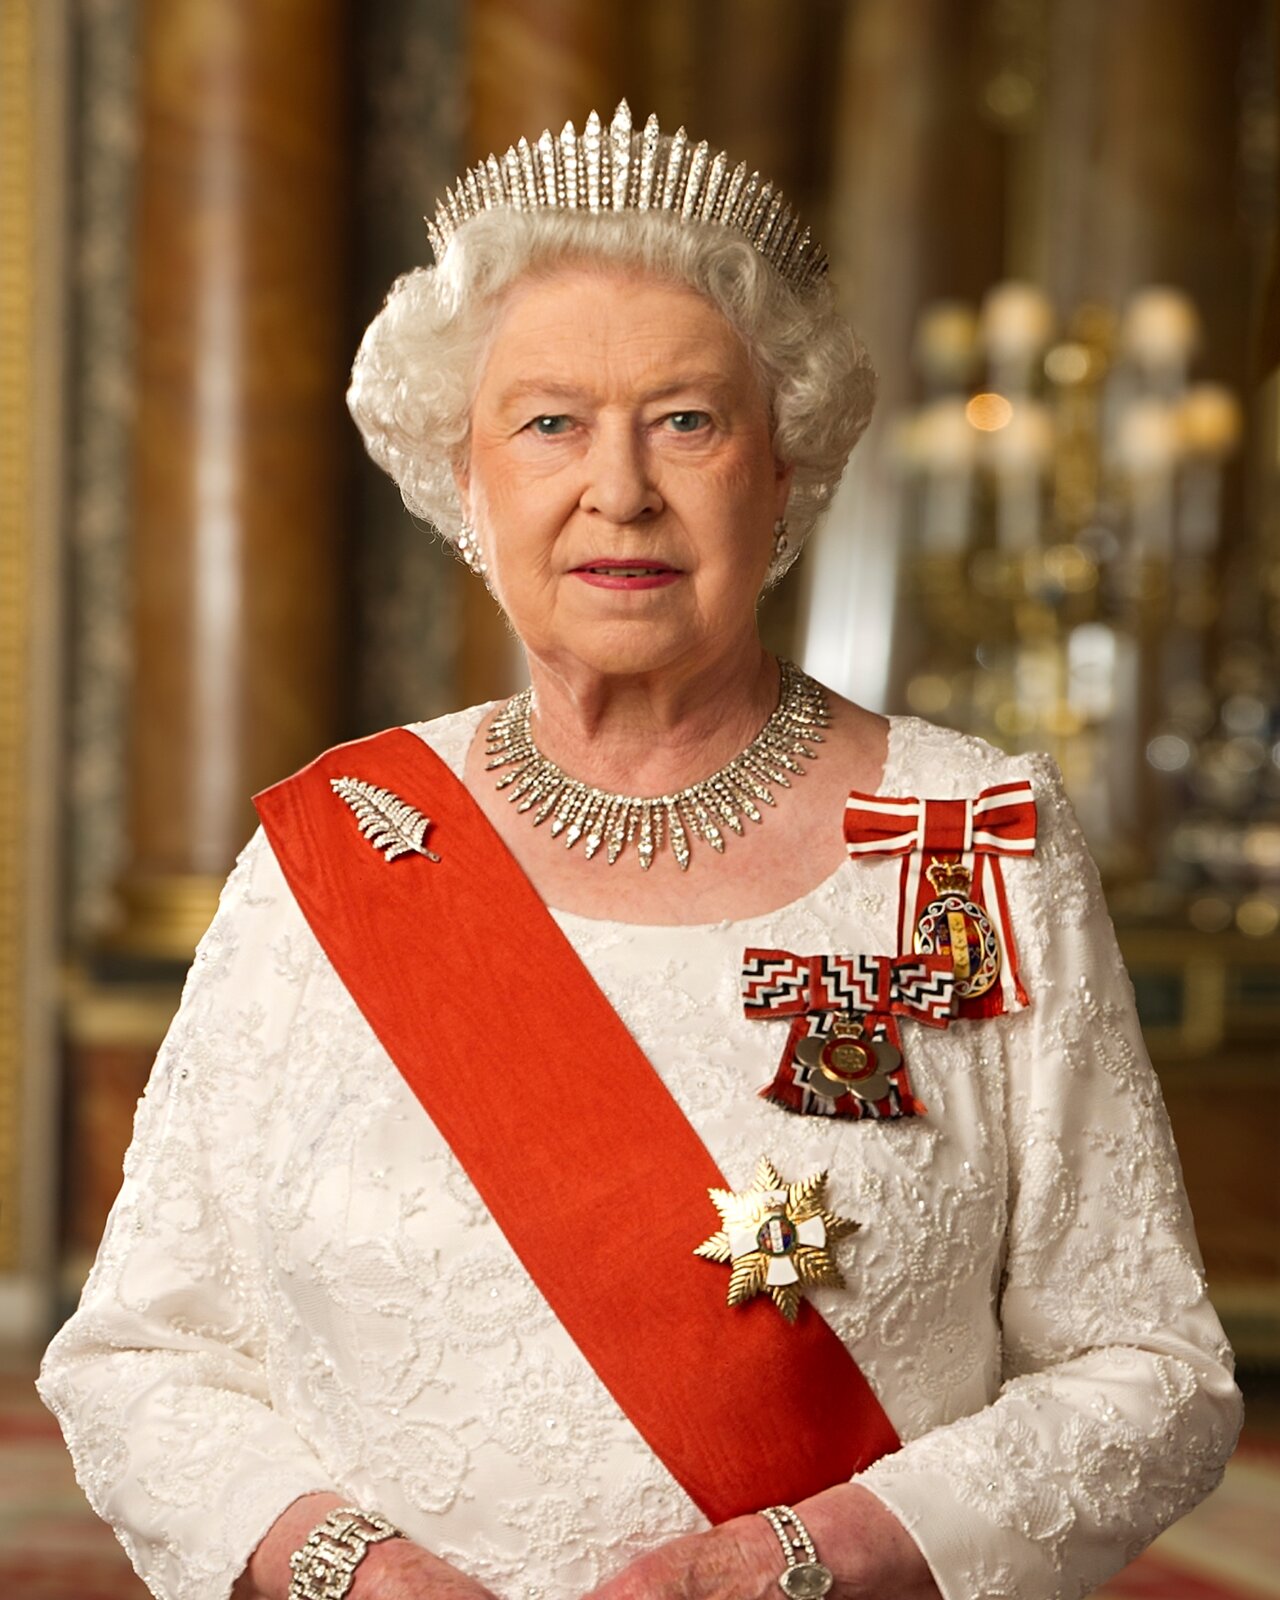 Zdjęcie przedstawia starszą, siwowłosą kobietę. Jest ubrana w białą suknię, przez prawie ramię ma przewieszoną szeroką, czerwoną szarfę. Na lewej piersi ma przypięte trzy odznaczenia. Na głowie ma koronę, a na szyi diadem.